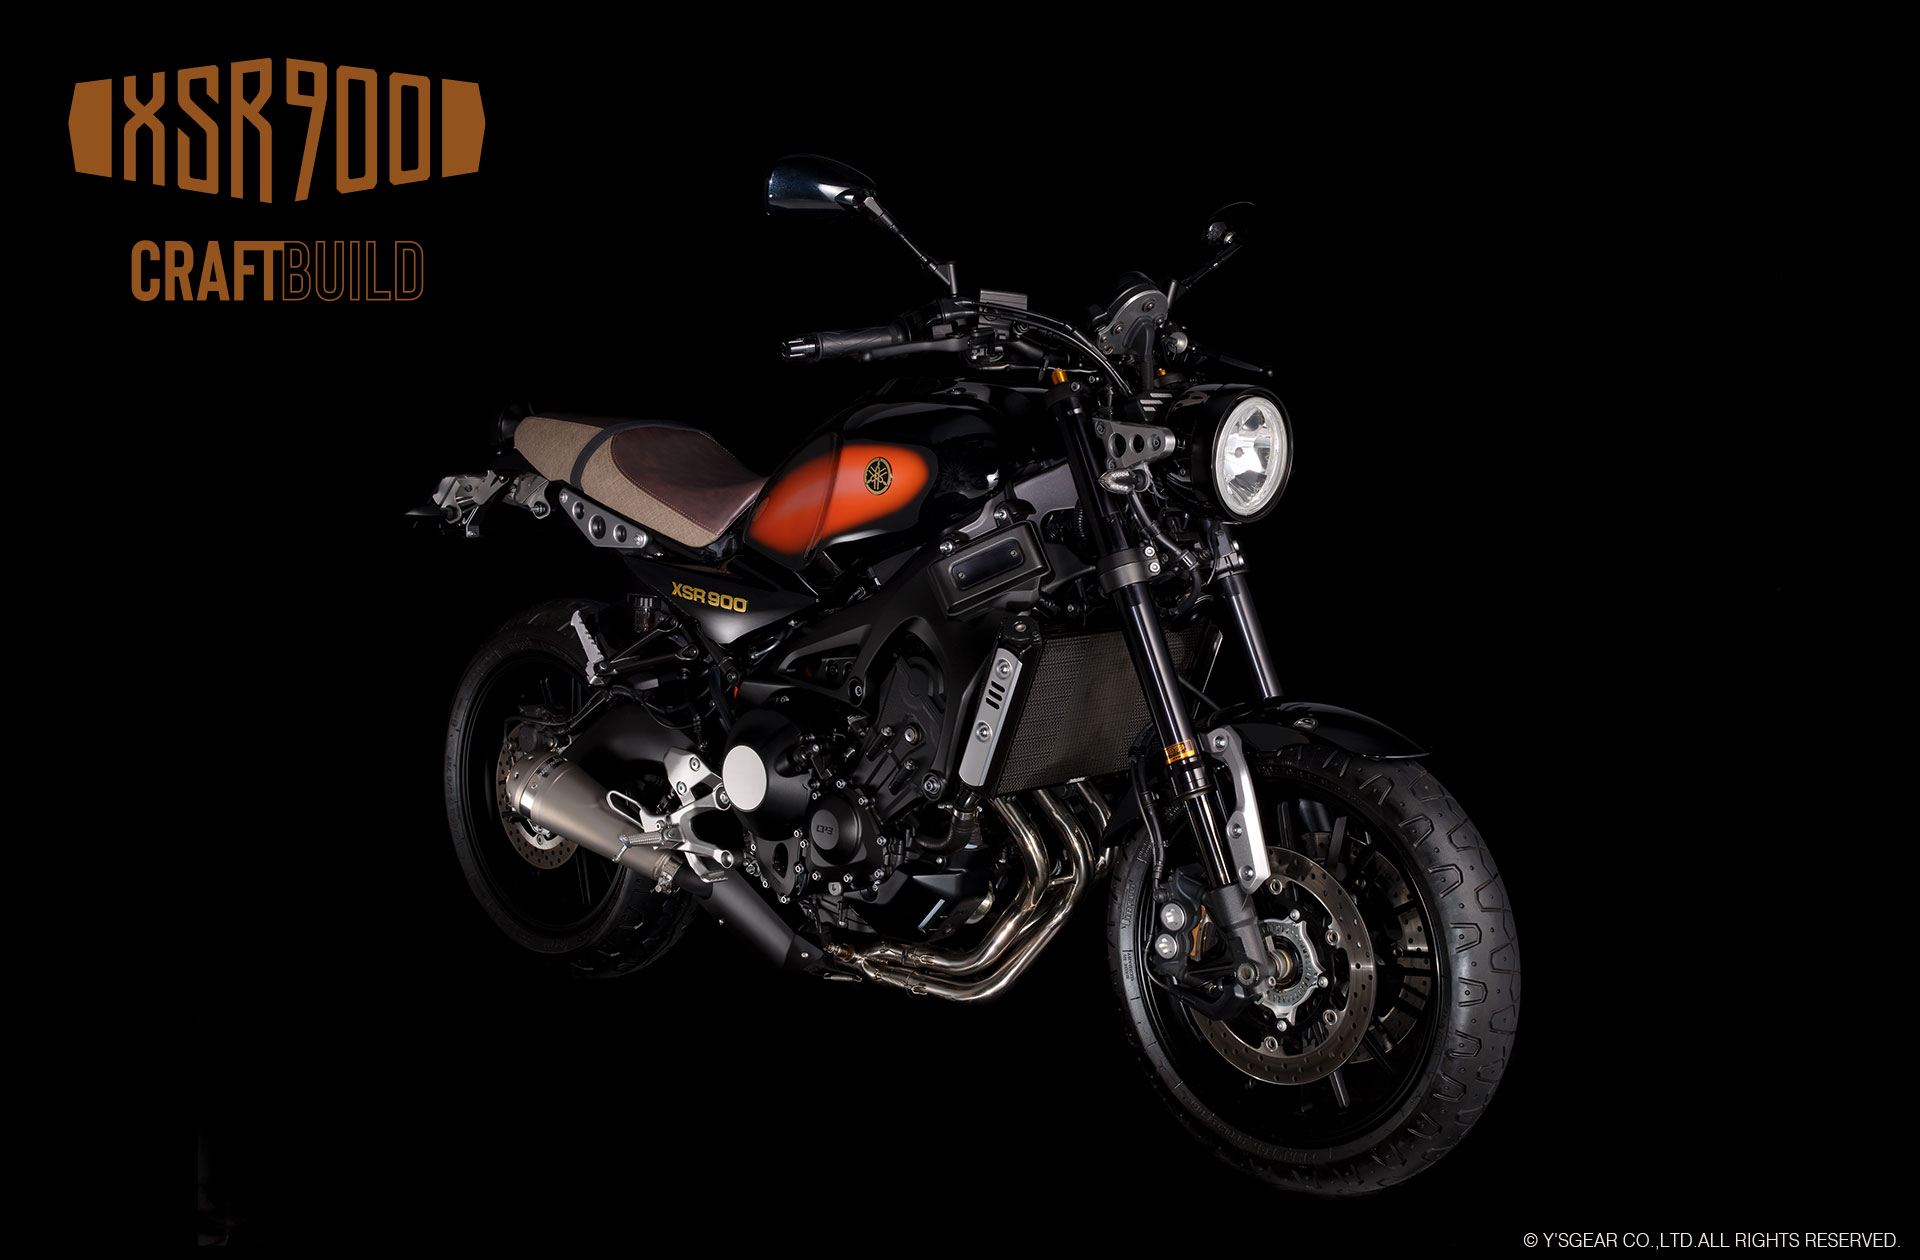 XSR900 CraftBuild外装セット - バイク用品・バイクパーツ | ヤマハ発動機グループ ワイズギア